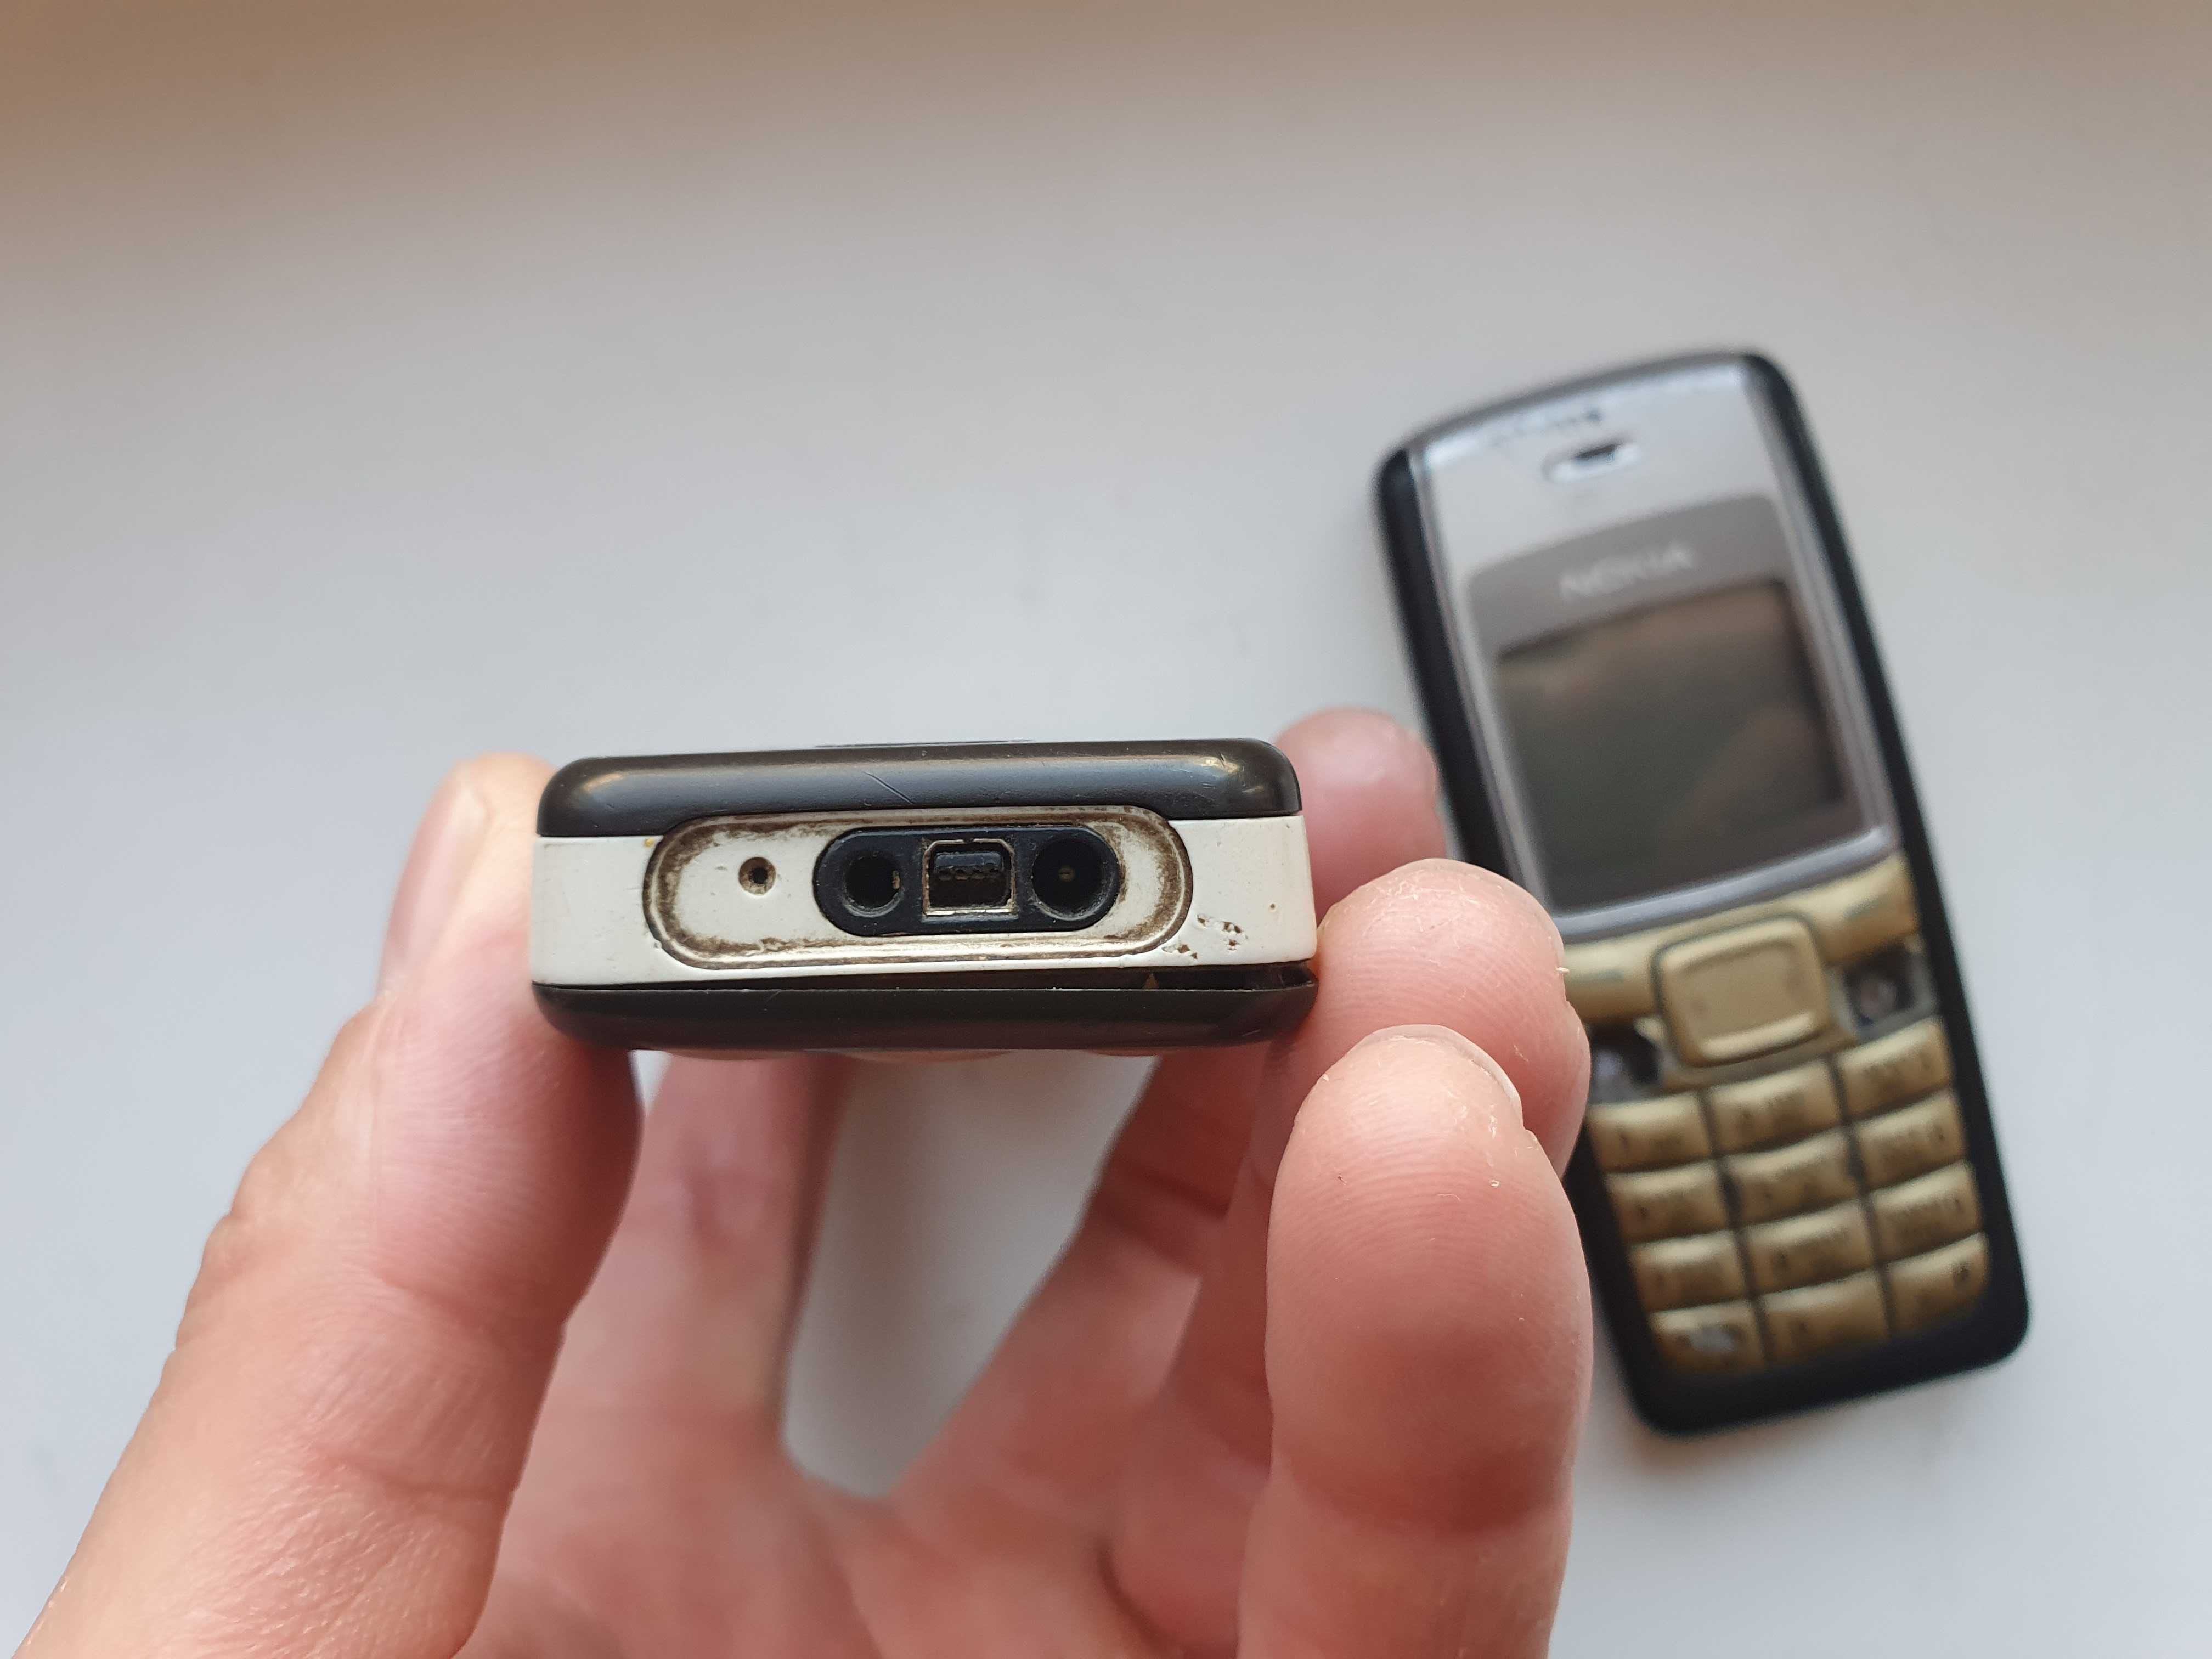 Оригинальный телефон Nokia 1110i чёрный